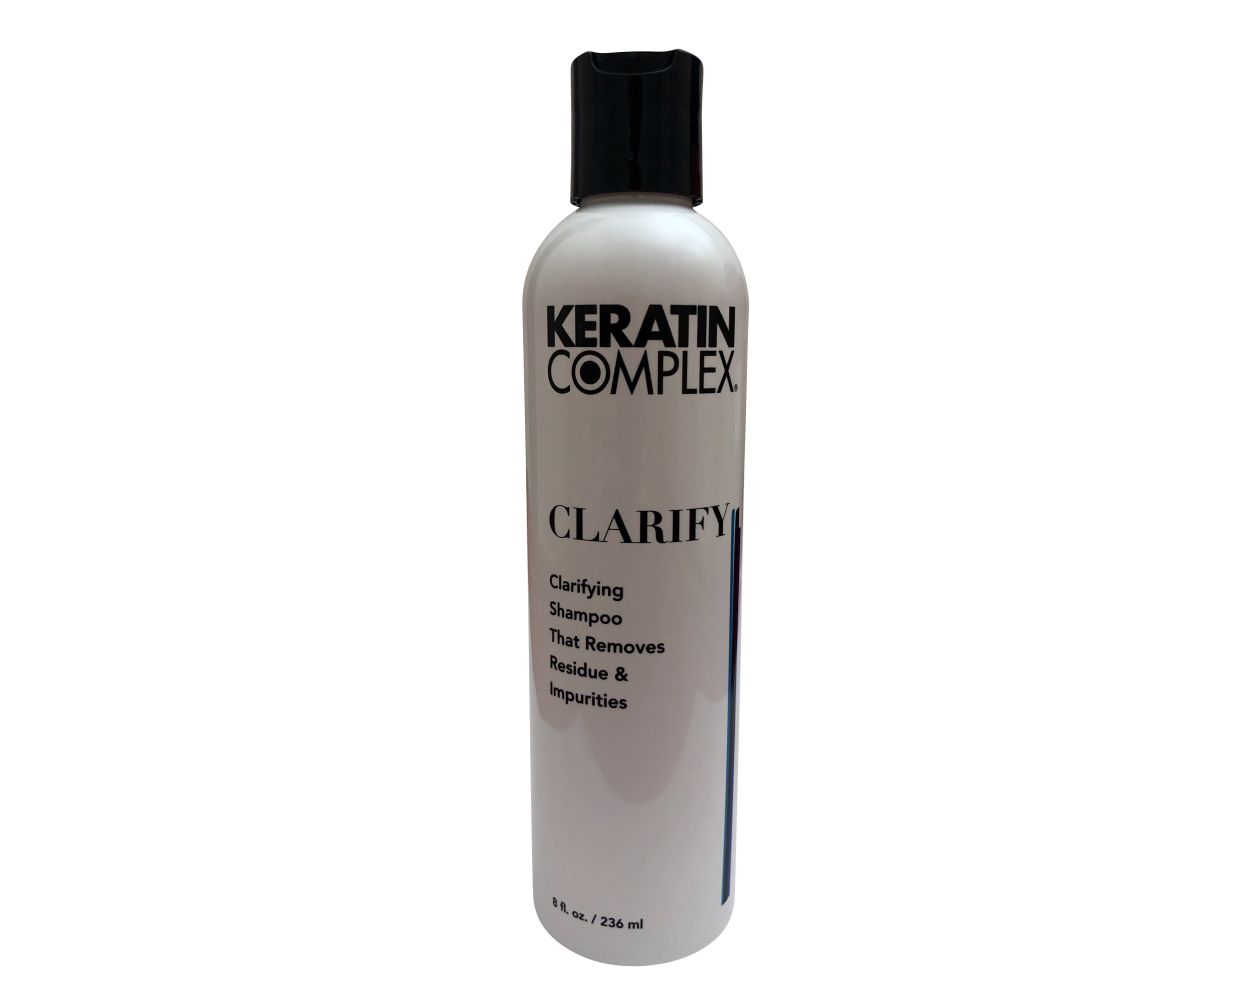 Keratin Clarify Clarifying | Shampoo - Beautyvice.com